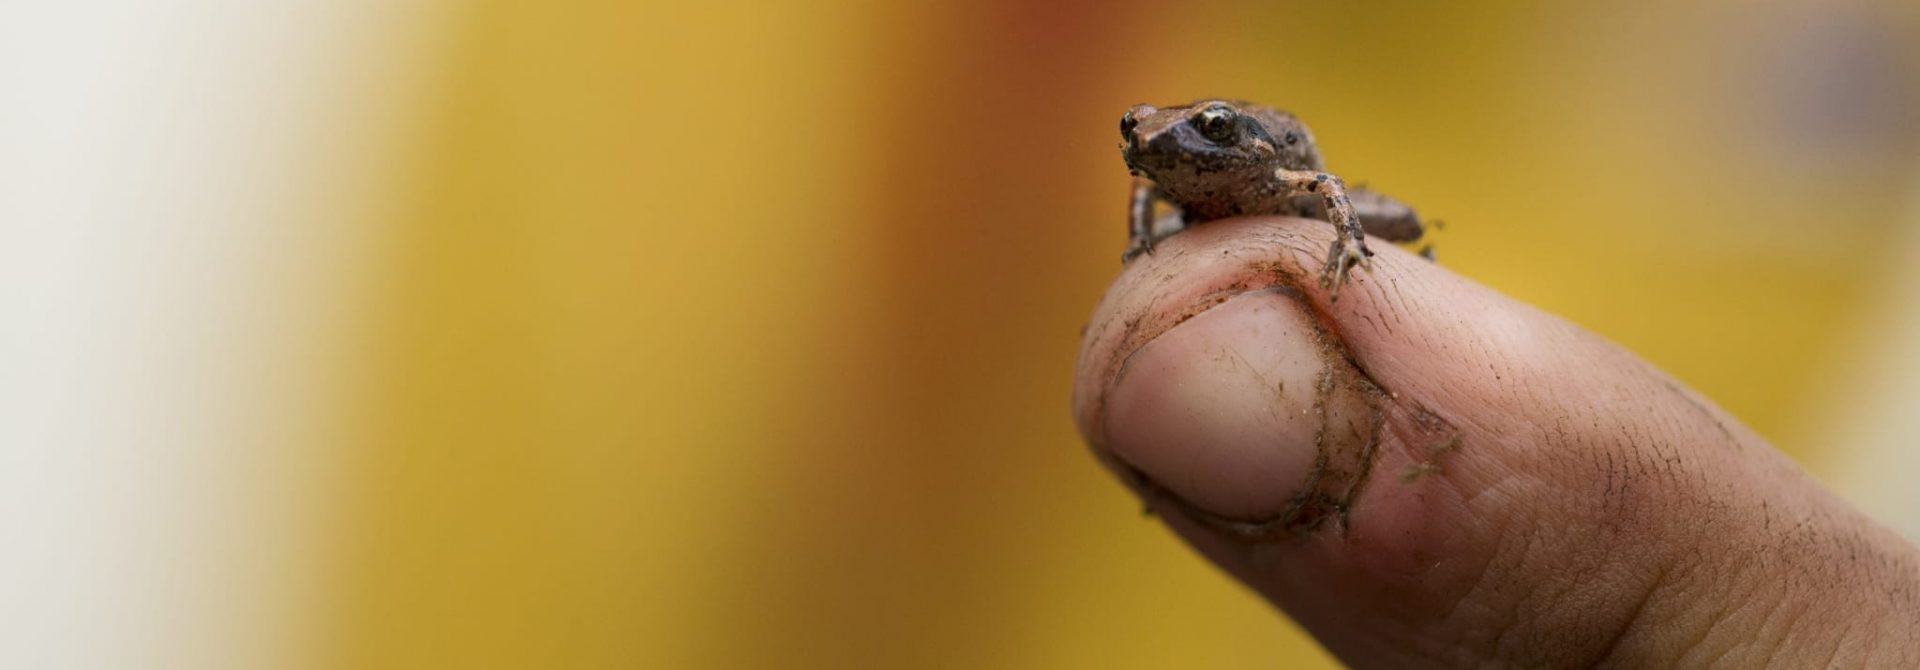 Frog sitting on a finger